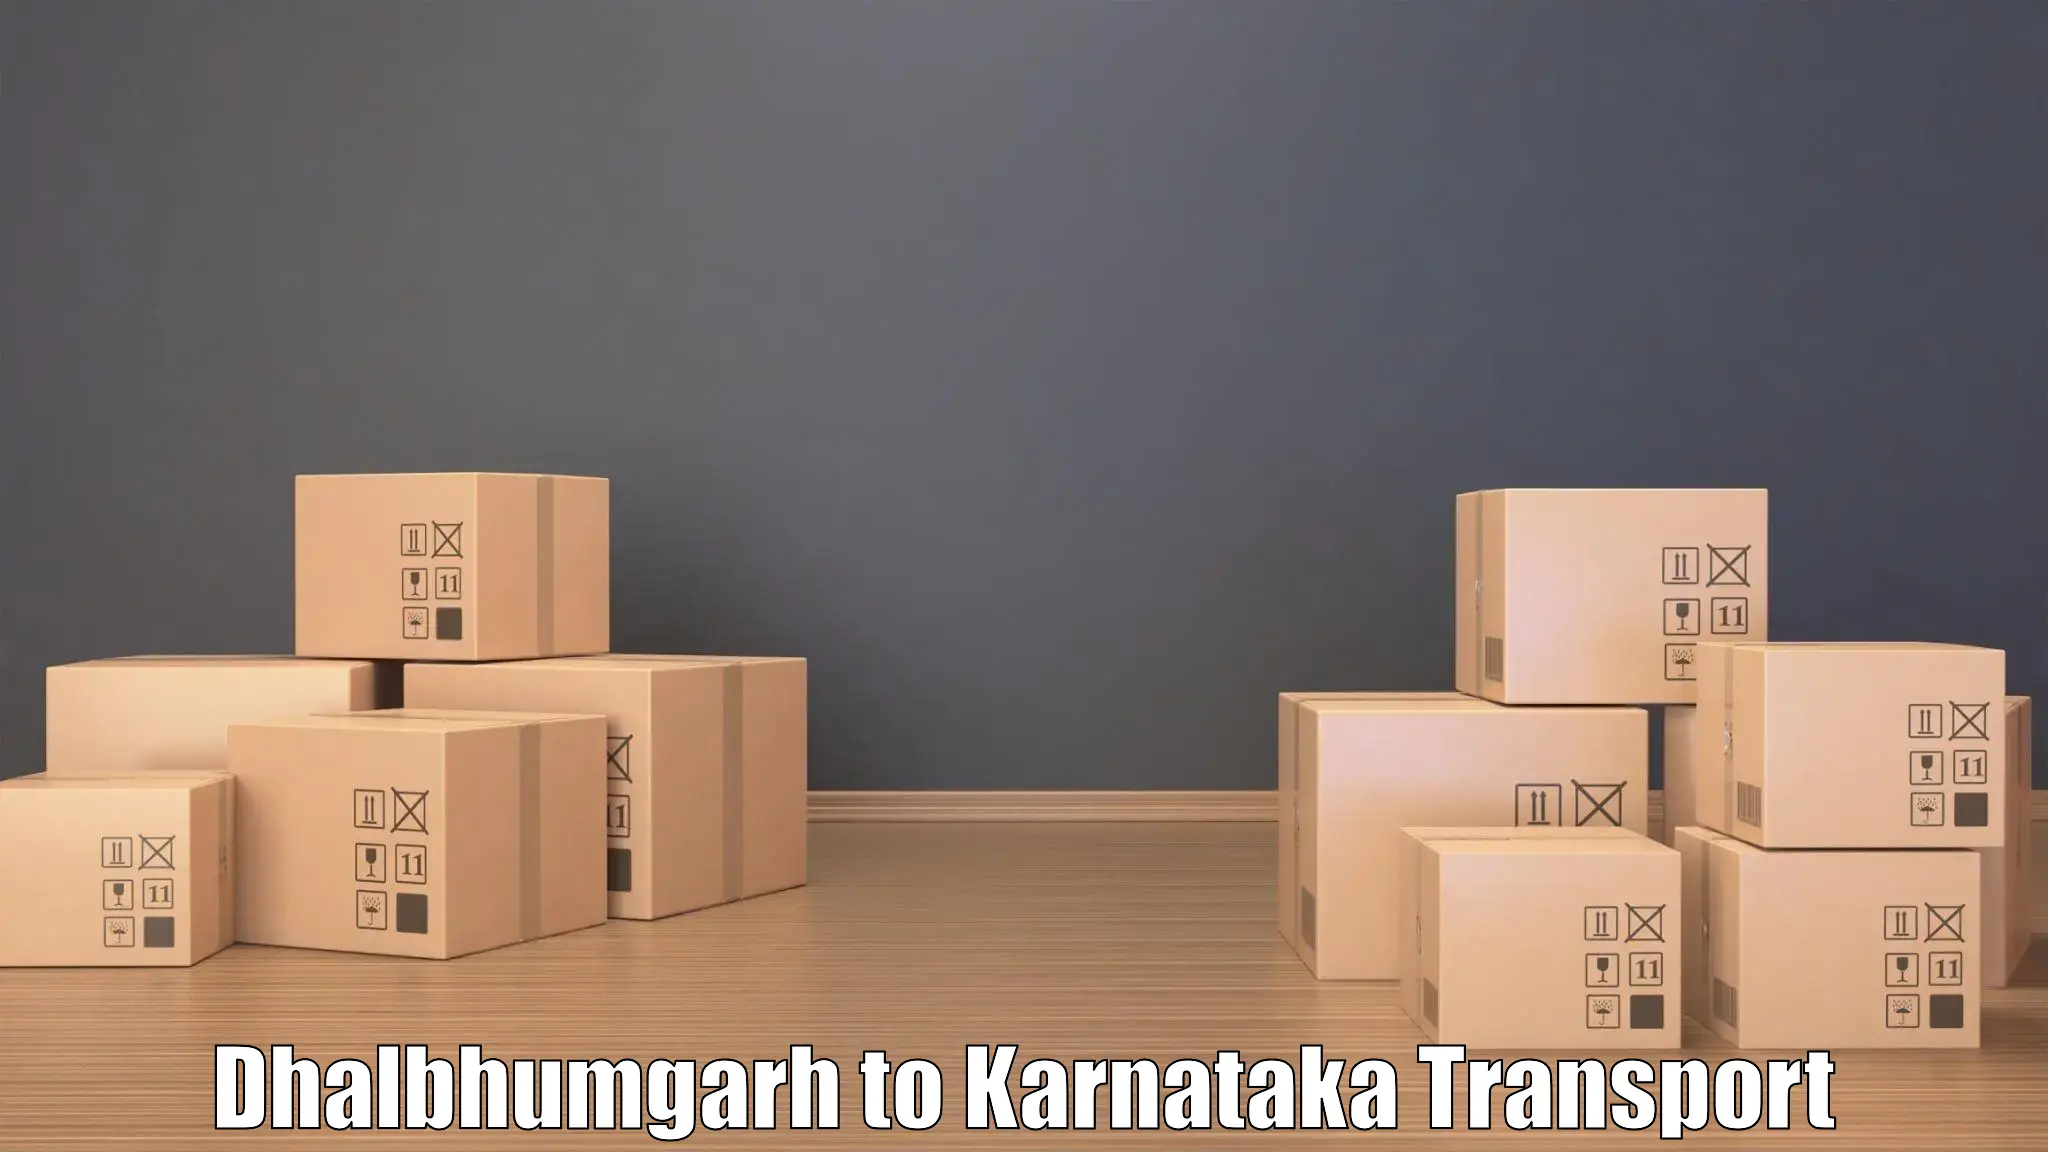 Nearest transport service Dhalbhumgarh to Davangere